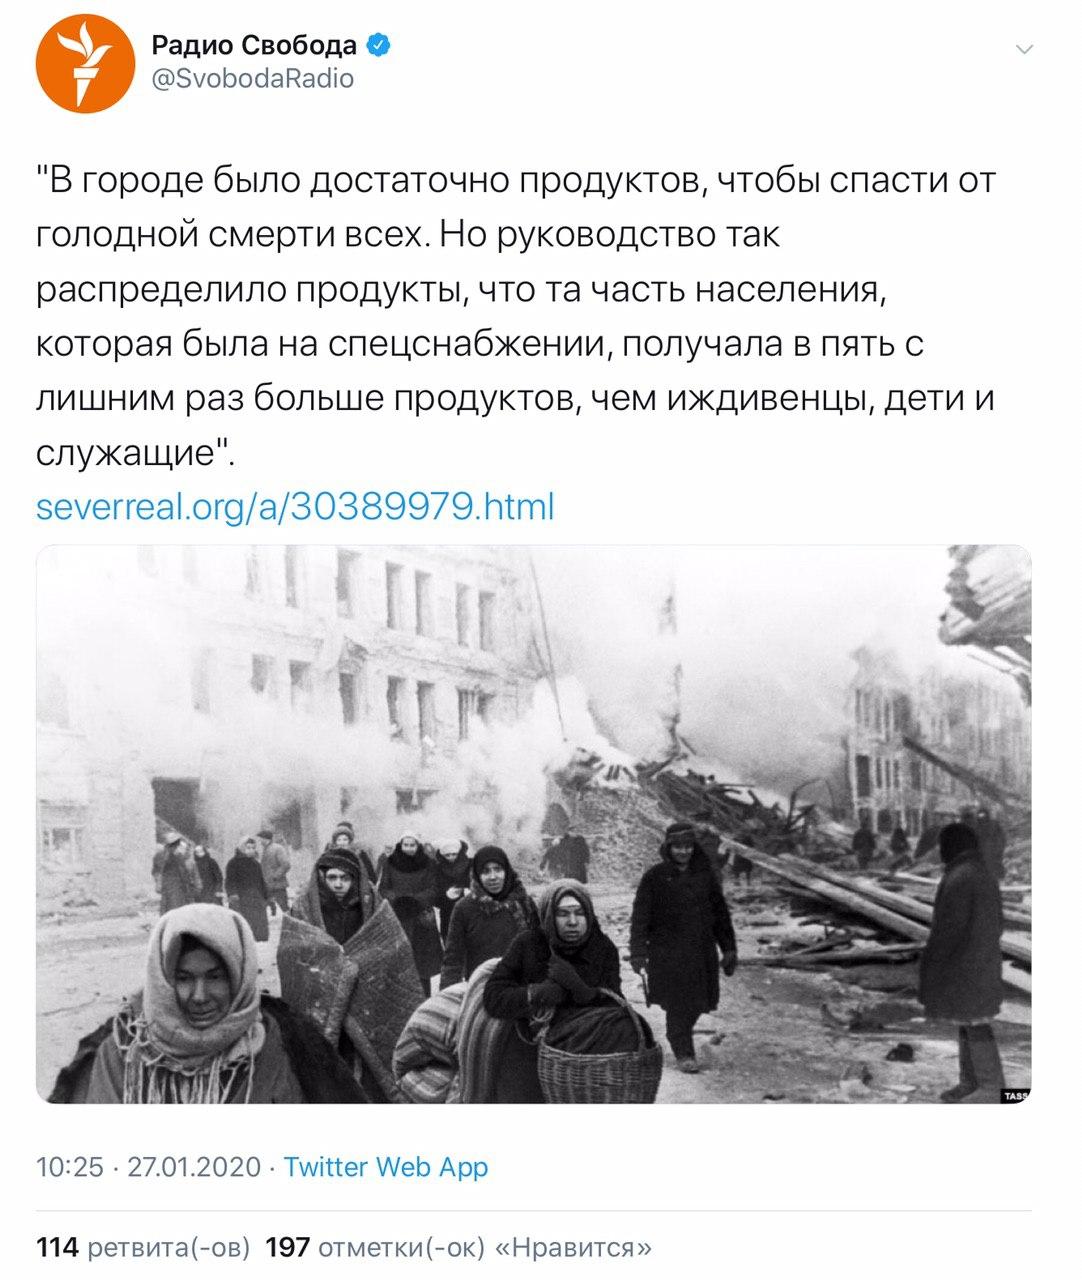 радио «Сволота» публикует насквозь лживый материал про блокадный Ленинград.